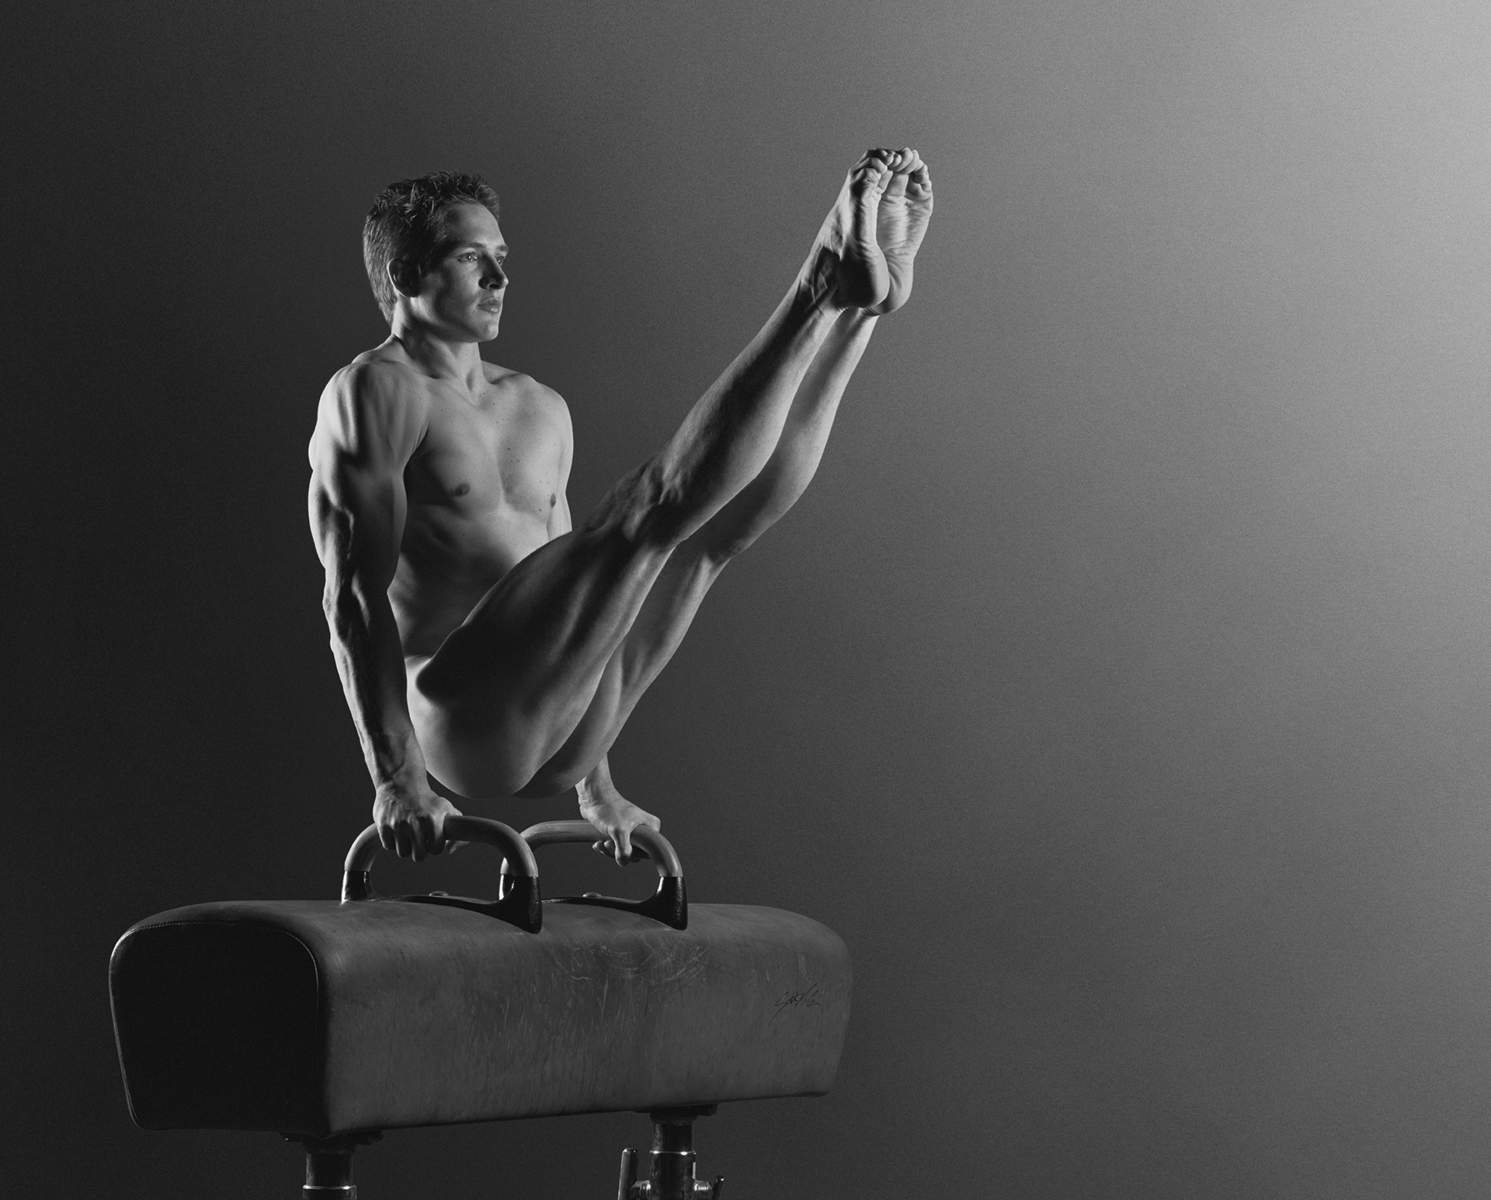 Striking, iconic nude studies of leading international athletes photographe...